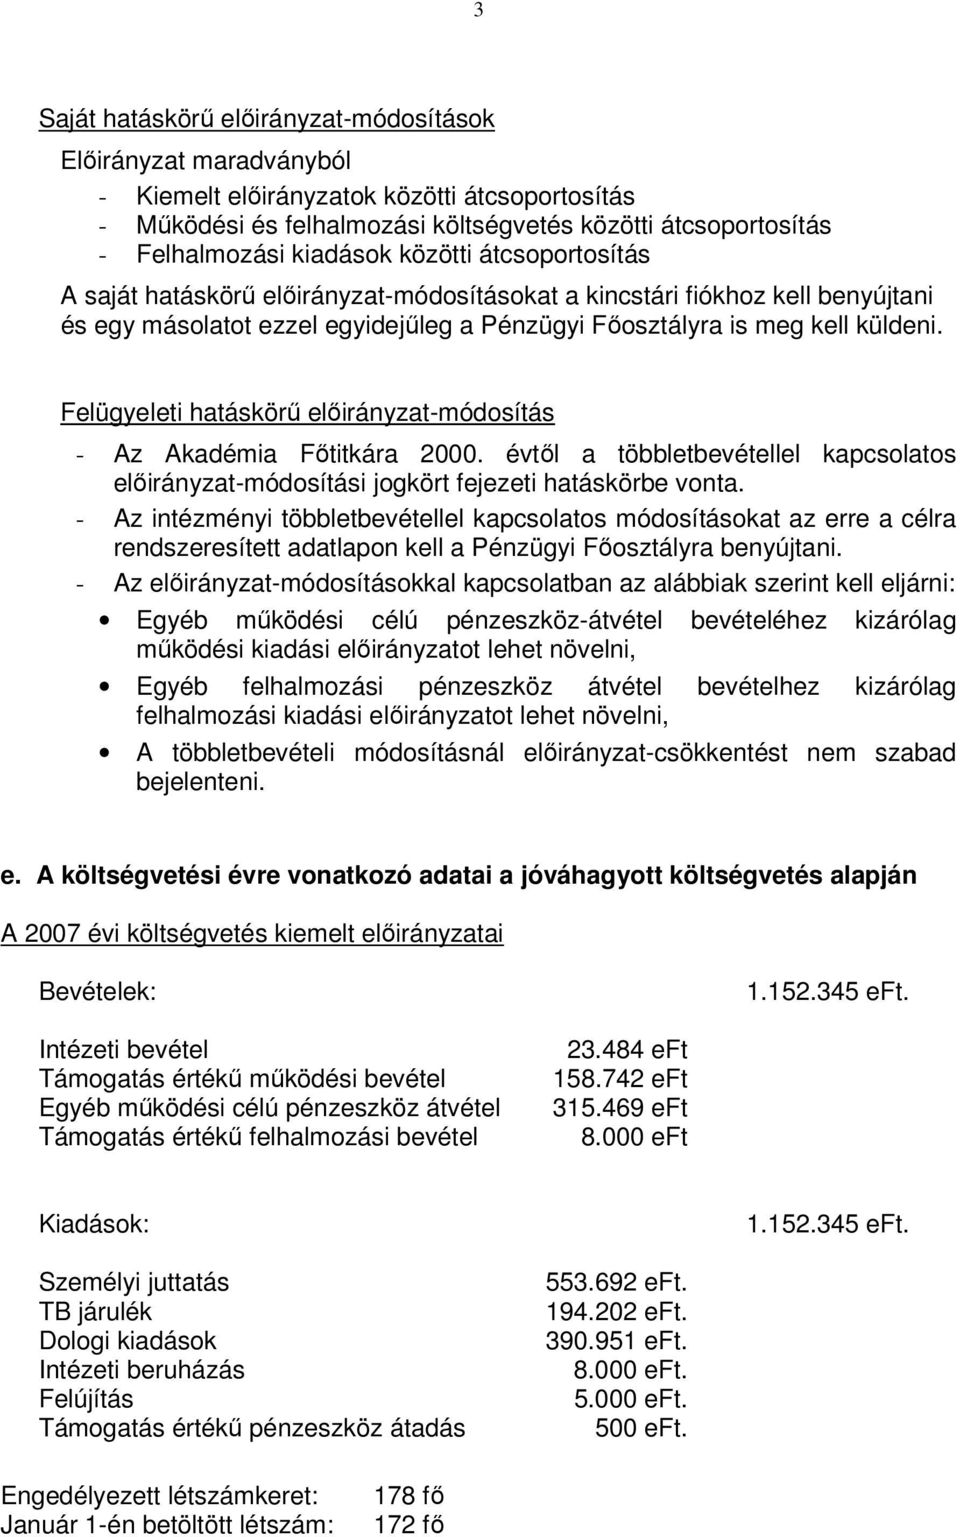 Felügyeleti hatáskörő elıirányzat-módosítás - Az Akadémia Fıtitkára 2000. évtıl a többletbevétellel kapcsolatos elıirányzat-módosítási jogkört fejezeti hatáskörbe vonta.